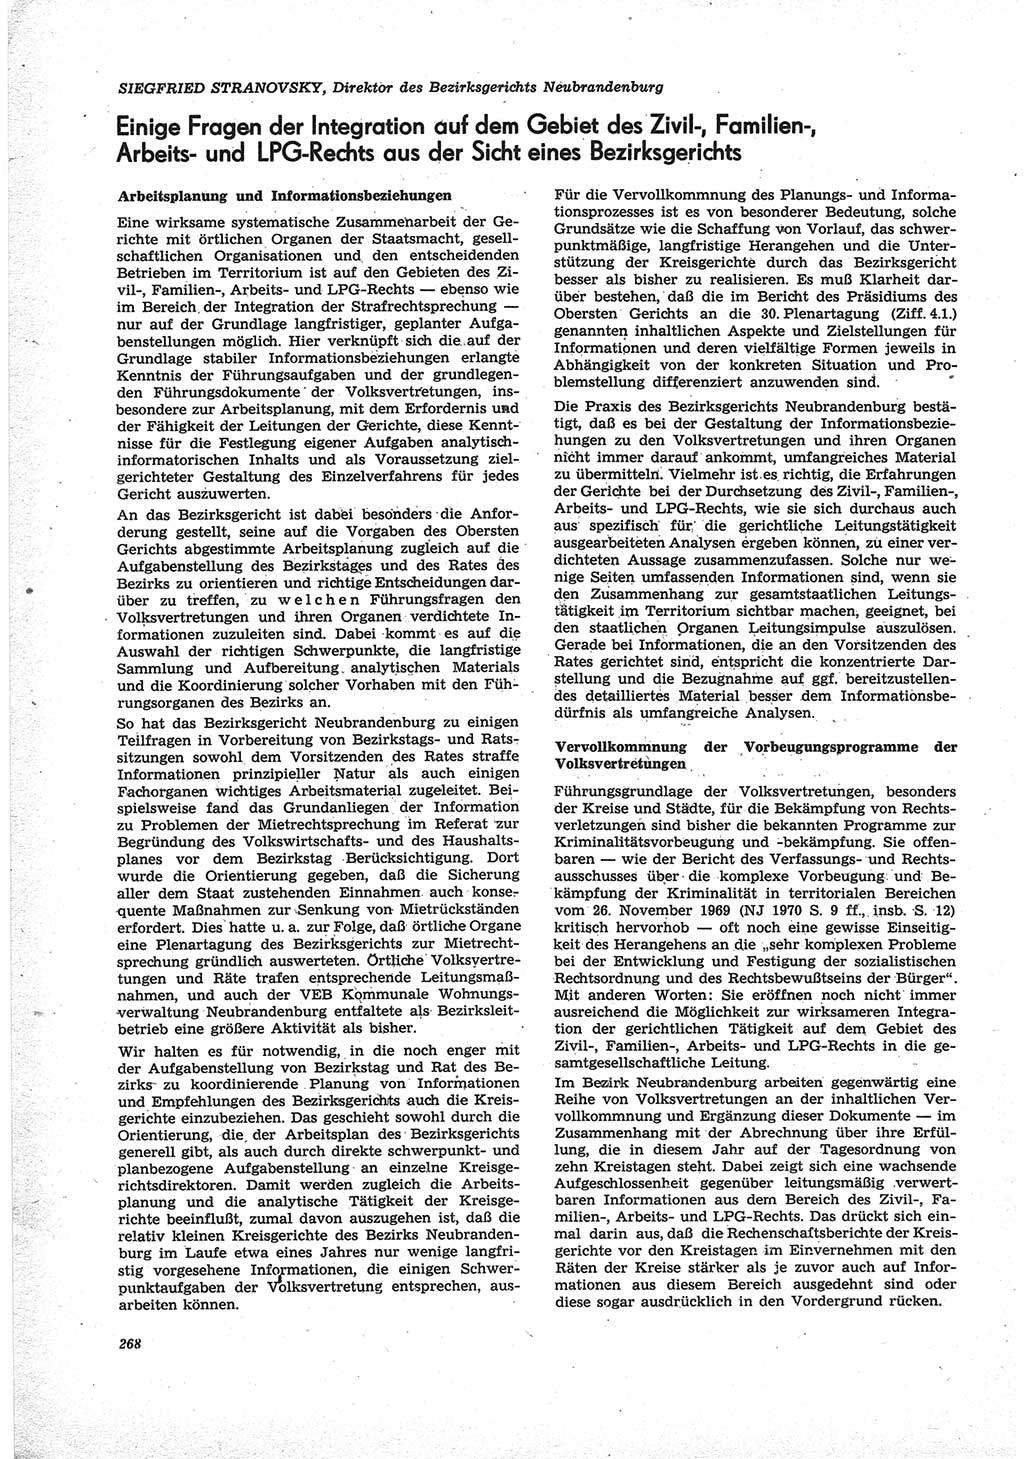 Neue Justiz (NJ), Zeitschrift für Recht und Rechtswissenschaft [Deutsche Demokratische Republik (DDR)], 25. Jahrgang 1971, Seite 268 (NJ DDR 1971, S. 268)